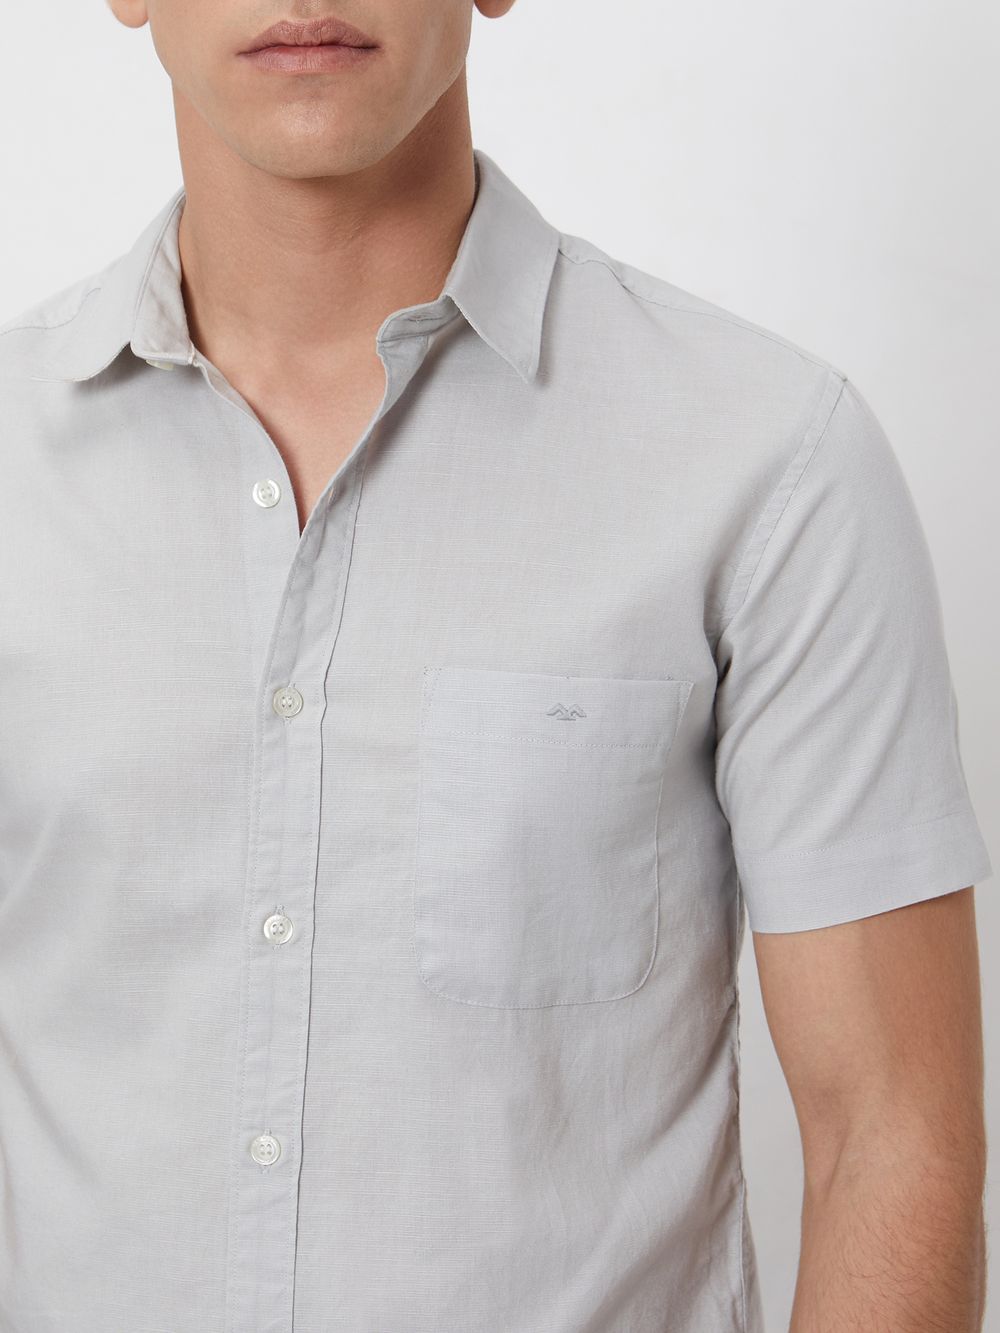 Light Grey Cotton Linen Plain Slim Fit Casual Shirt